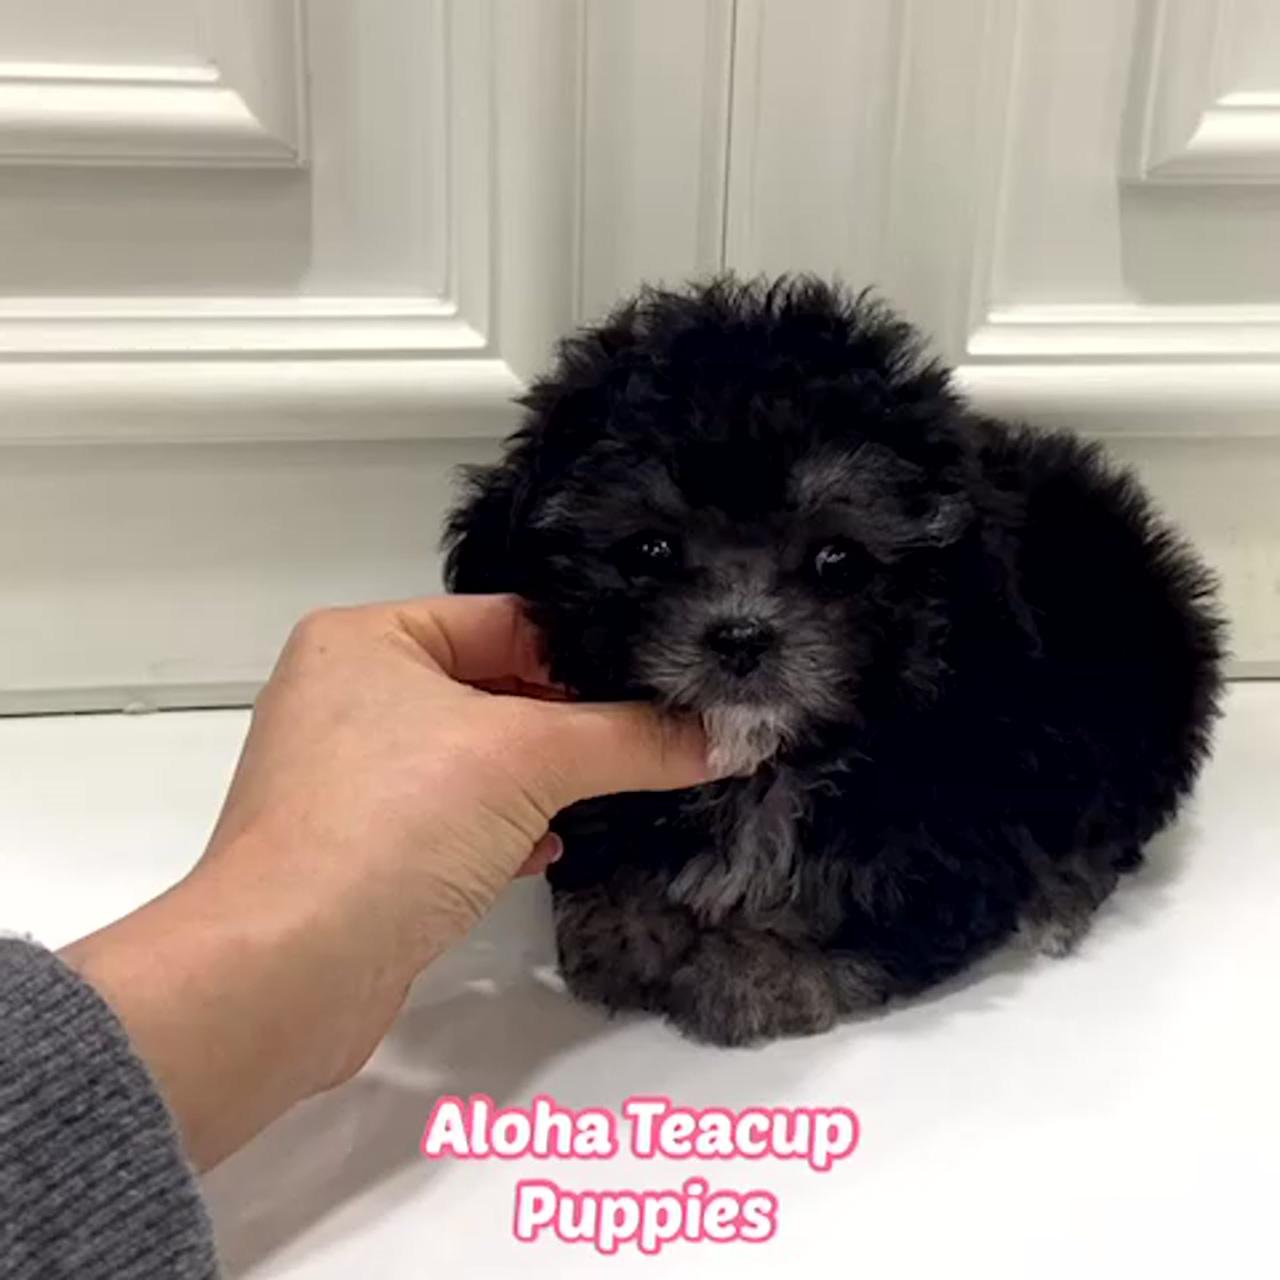 Aloha teacup puppies inc; teacup pomeranian